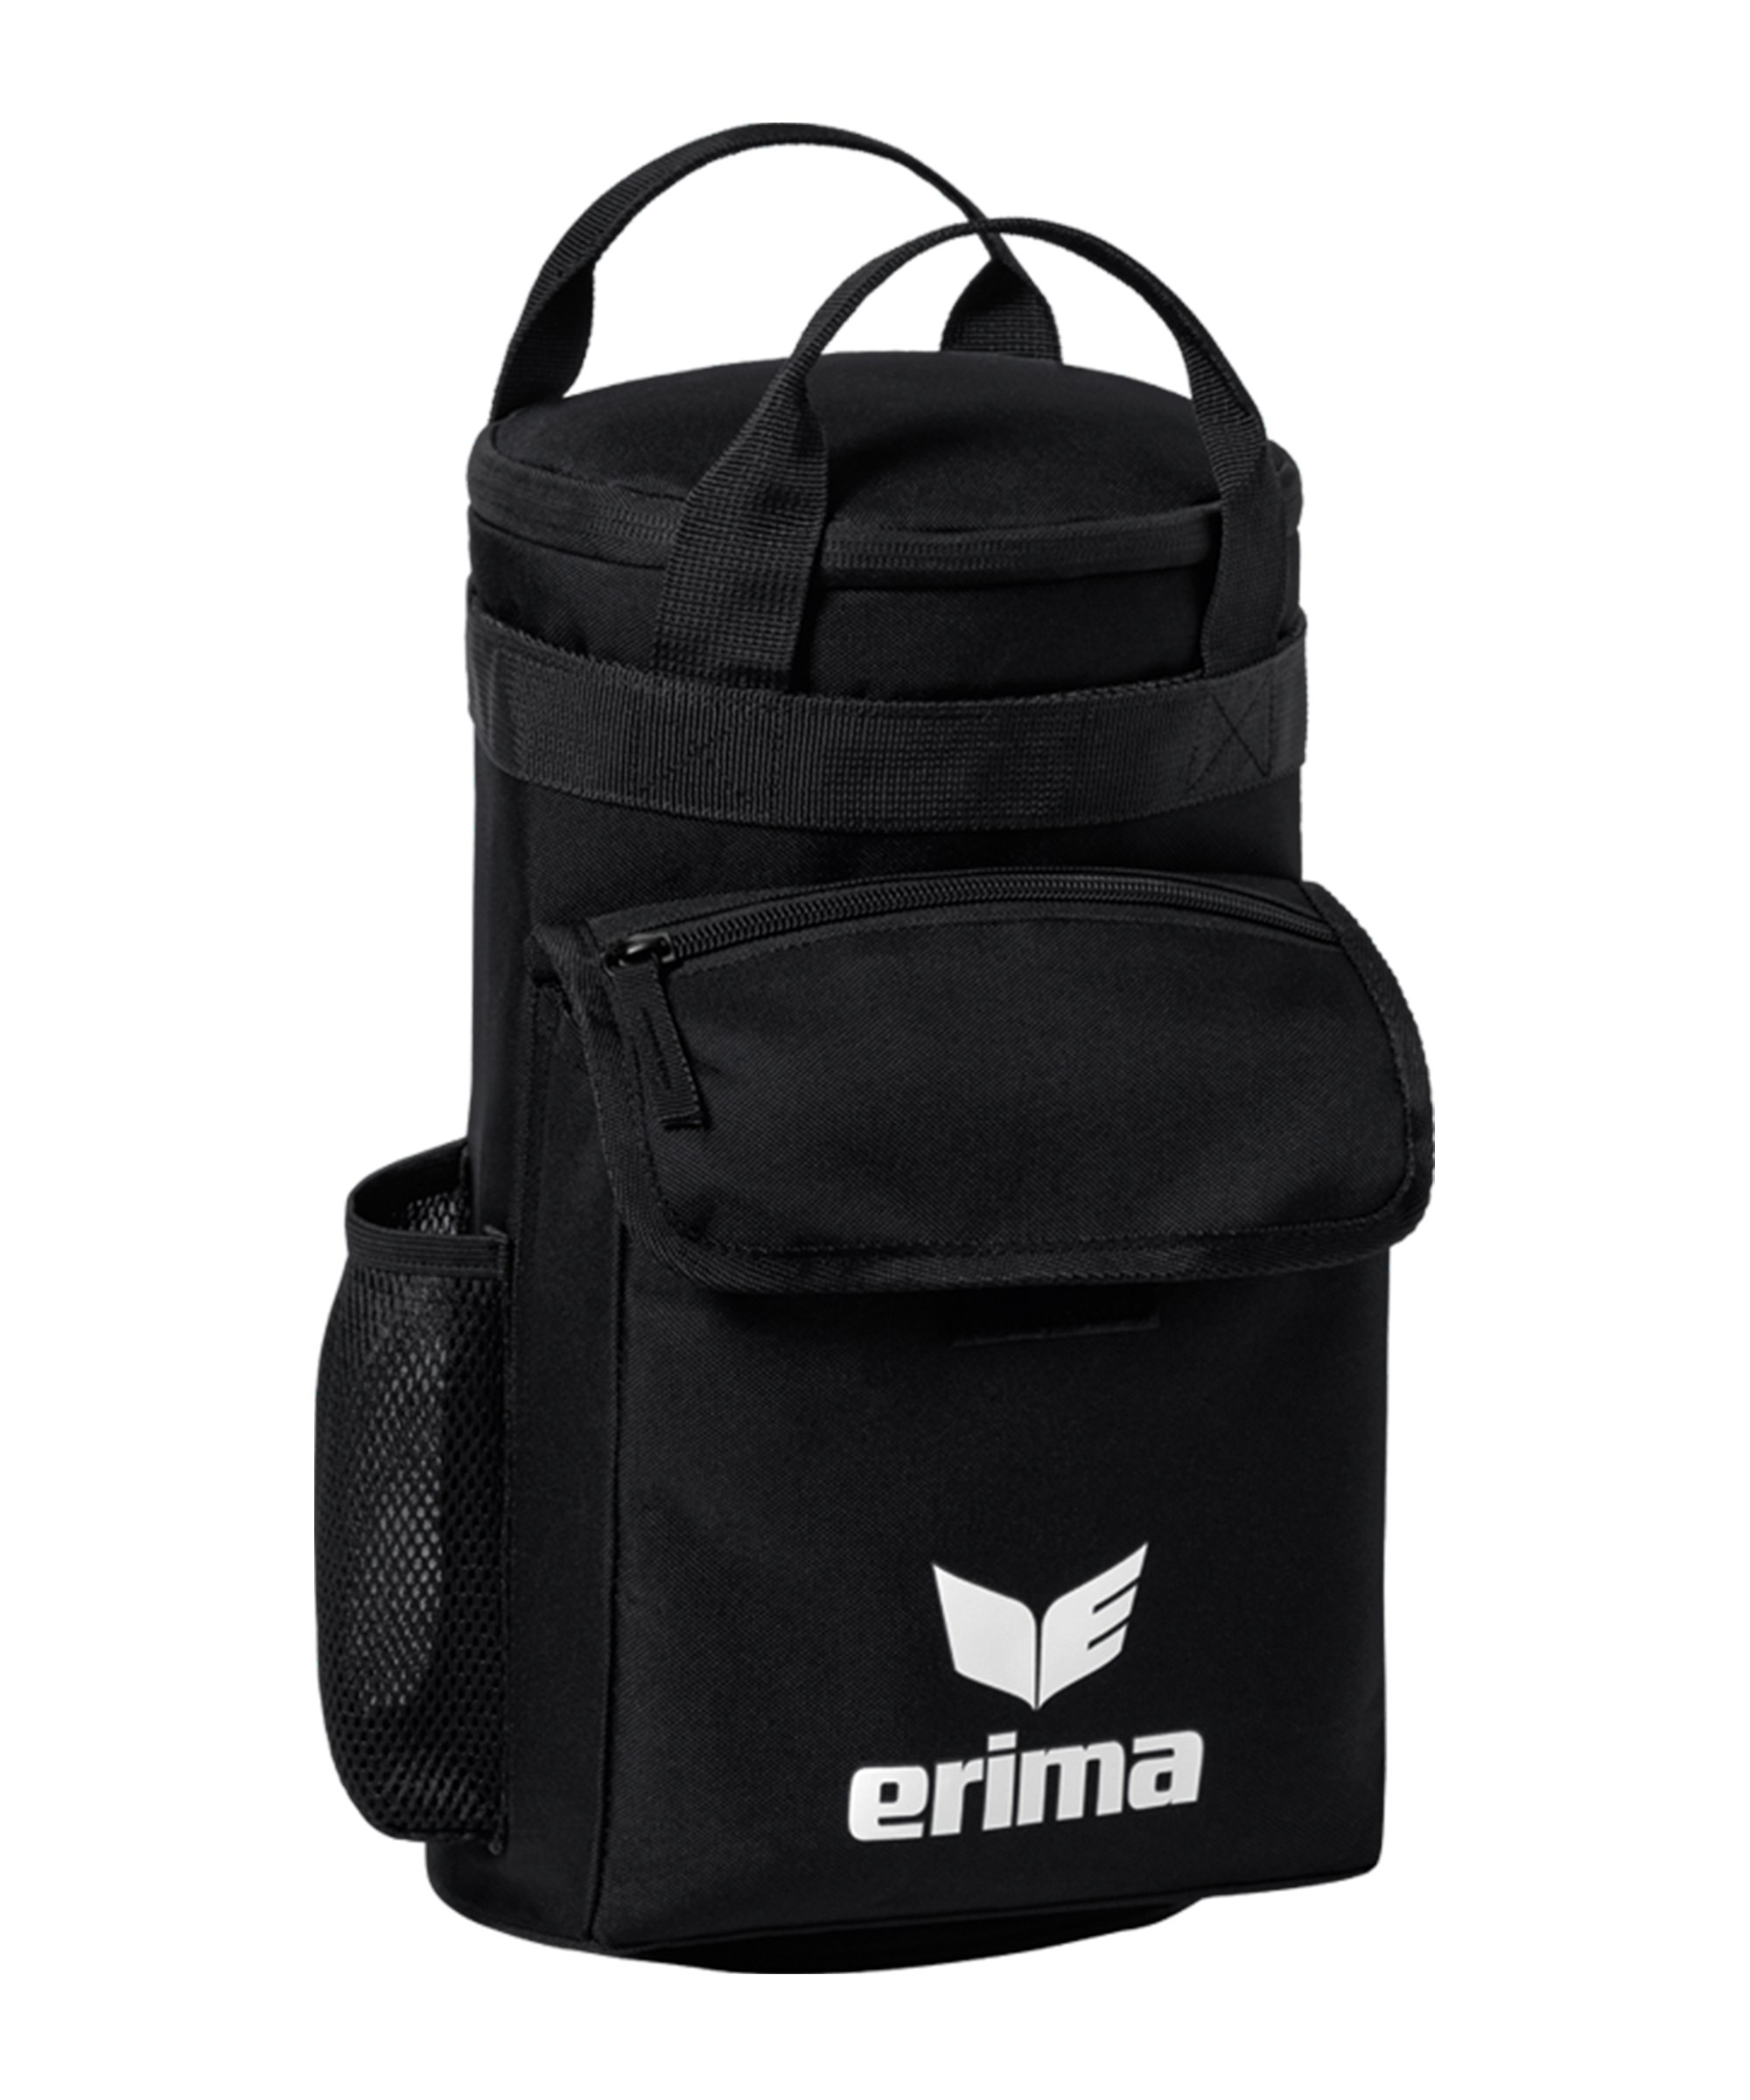 Erima Ice Bag Wassertasche Schwarz - schwarz